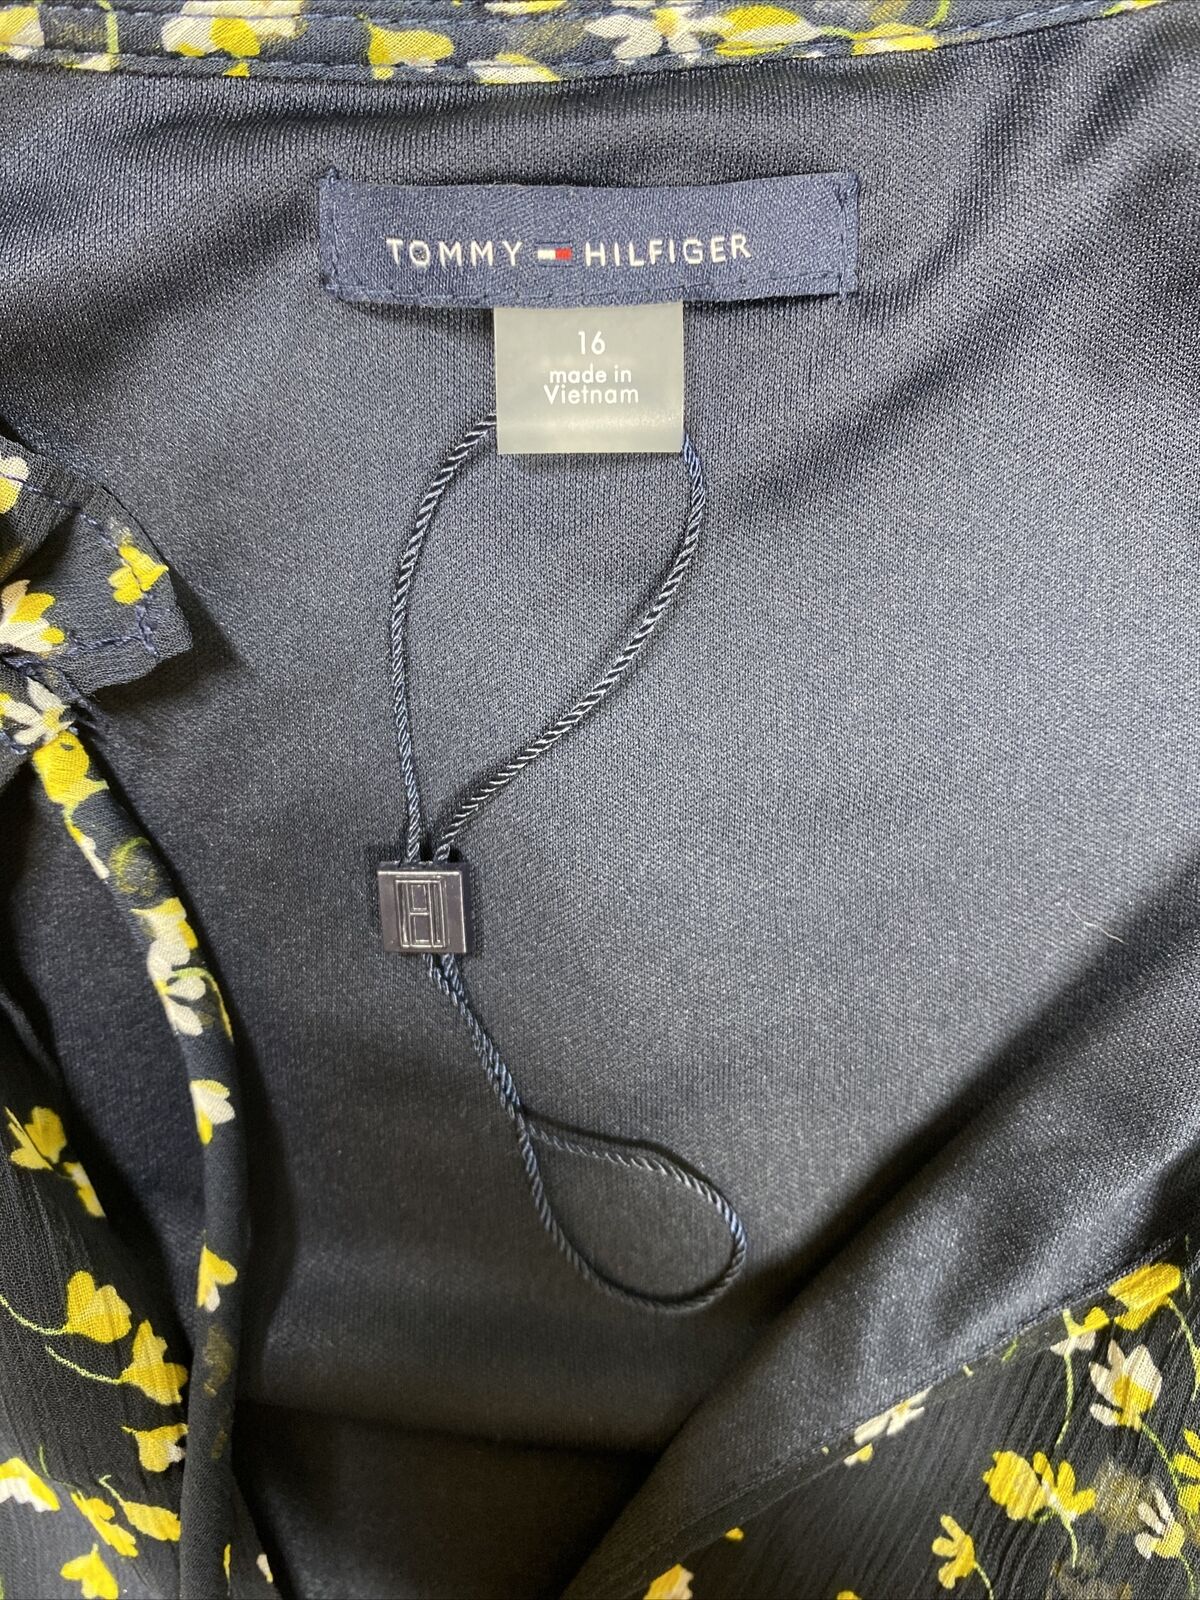 Tommy Hilfiger Vestido recto floral azul/amarillo para mujer - 16